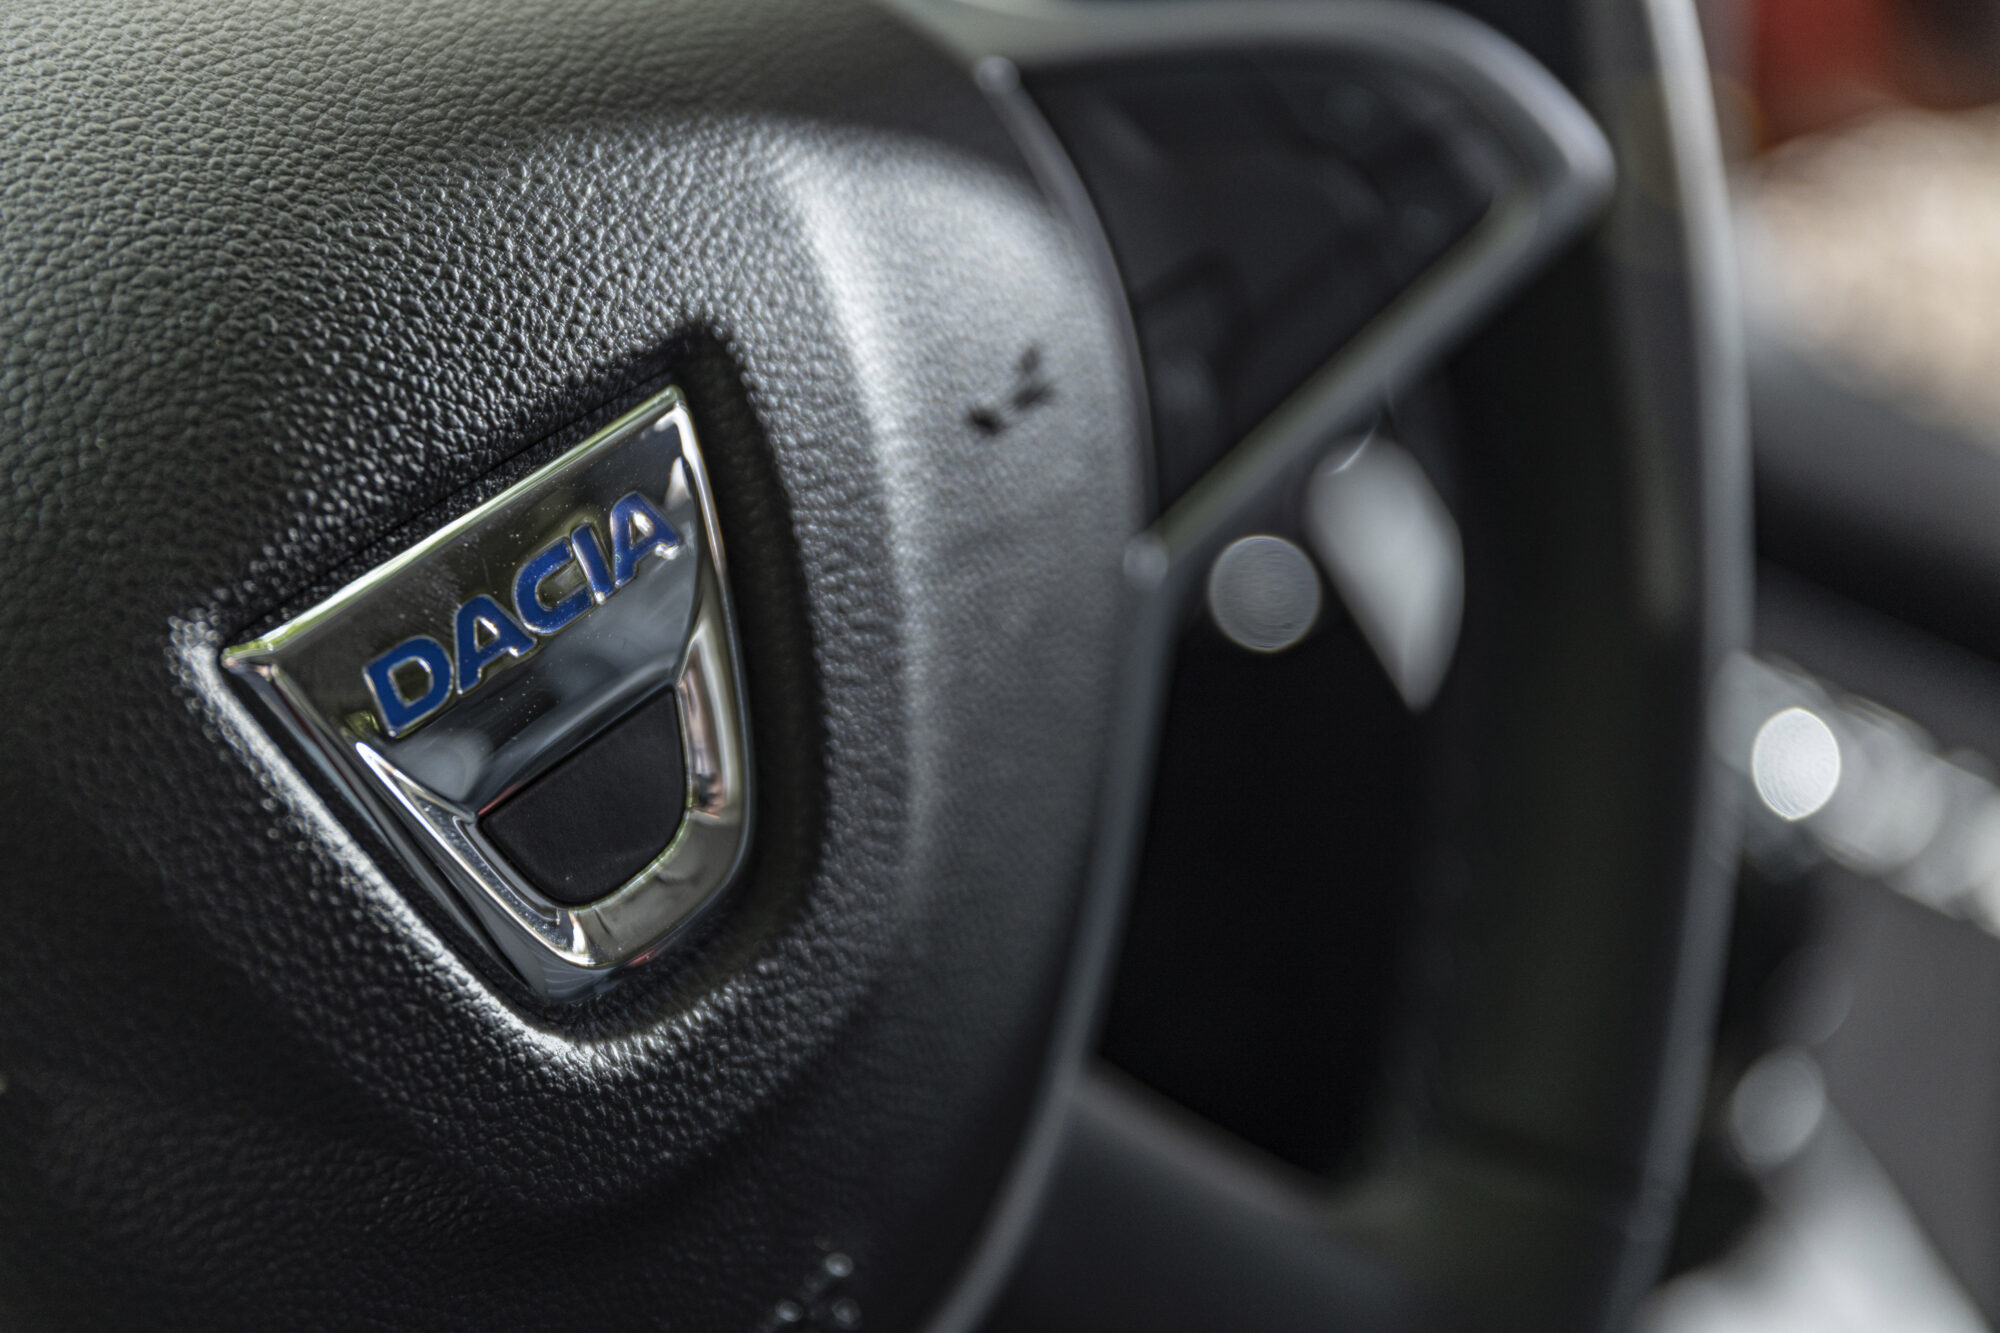 2021 - New Dacia Duster 4X2 - Arizona Orange tests drive